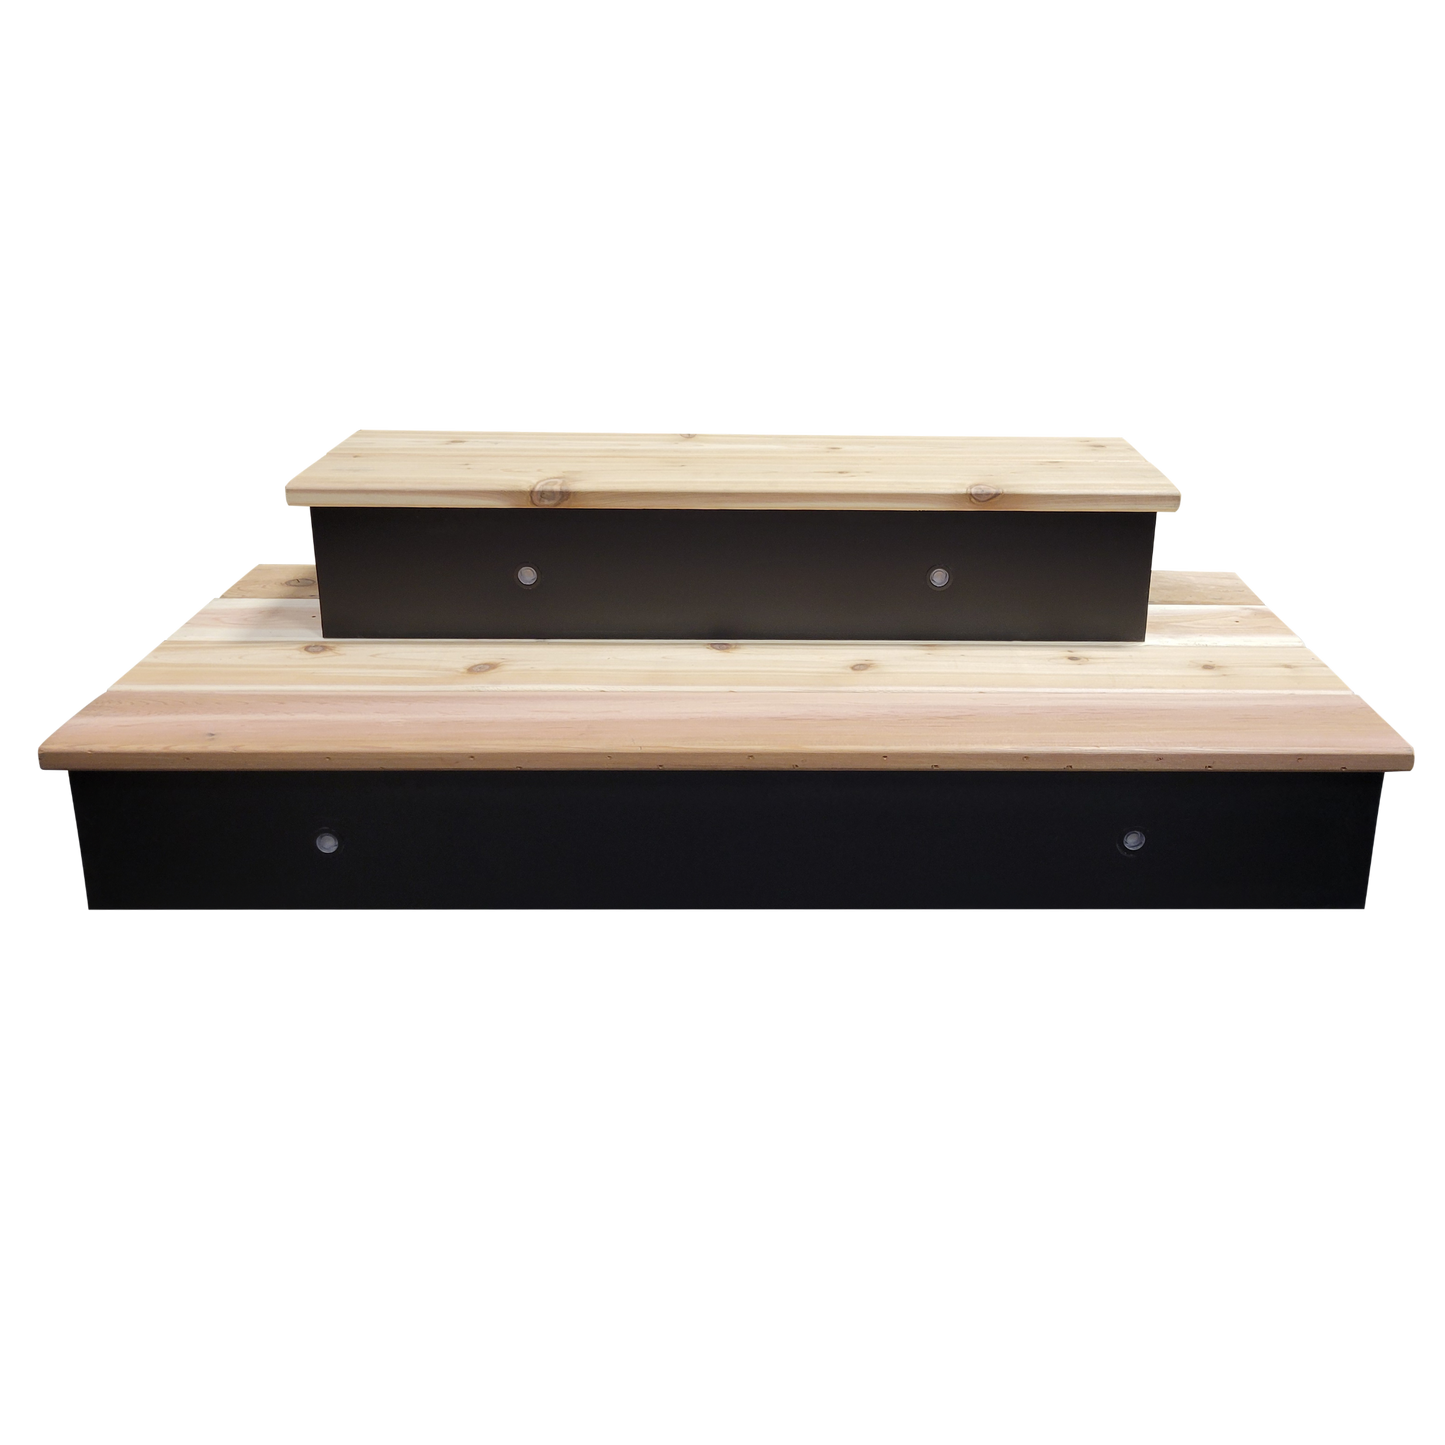 Cedar Deck Step Package with 2 steps